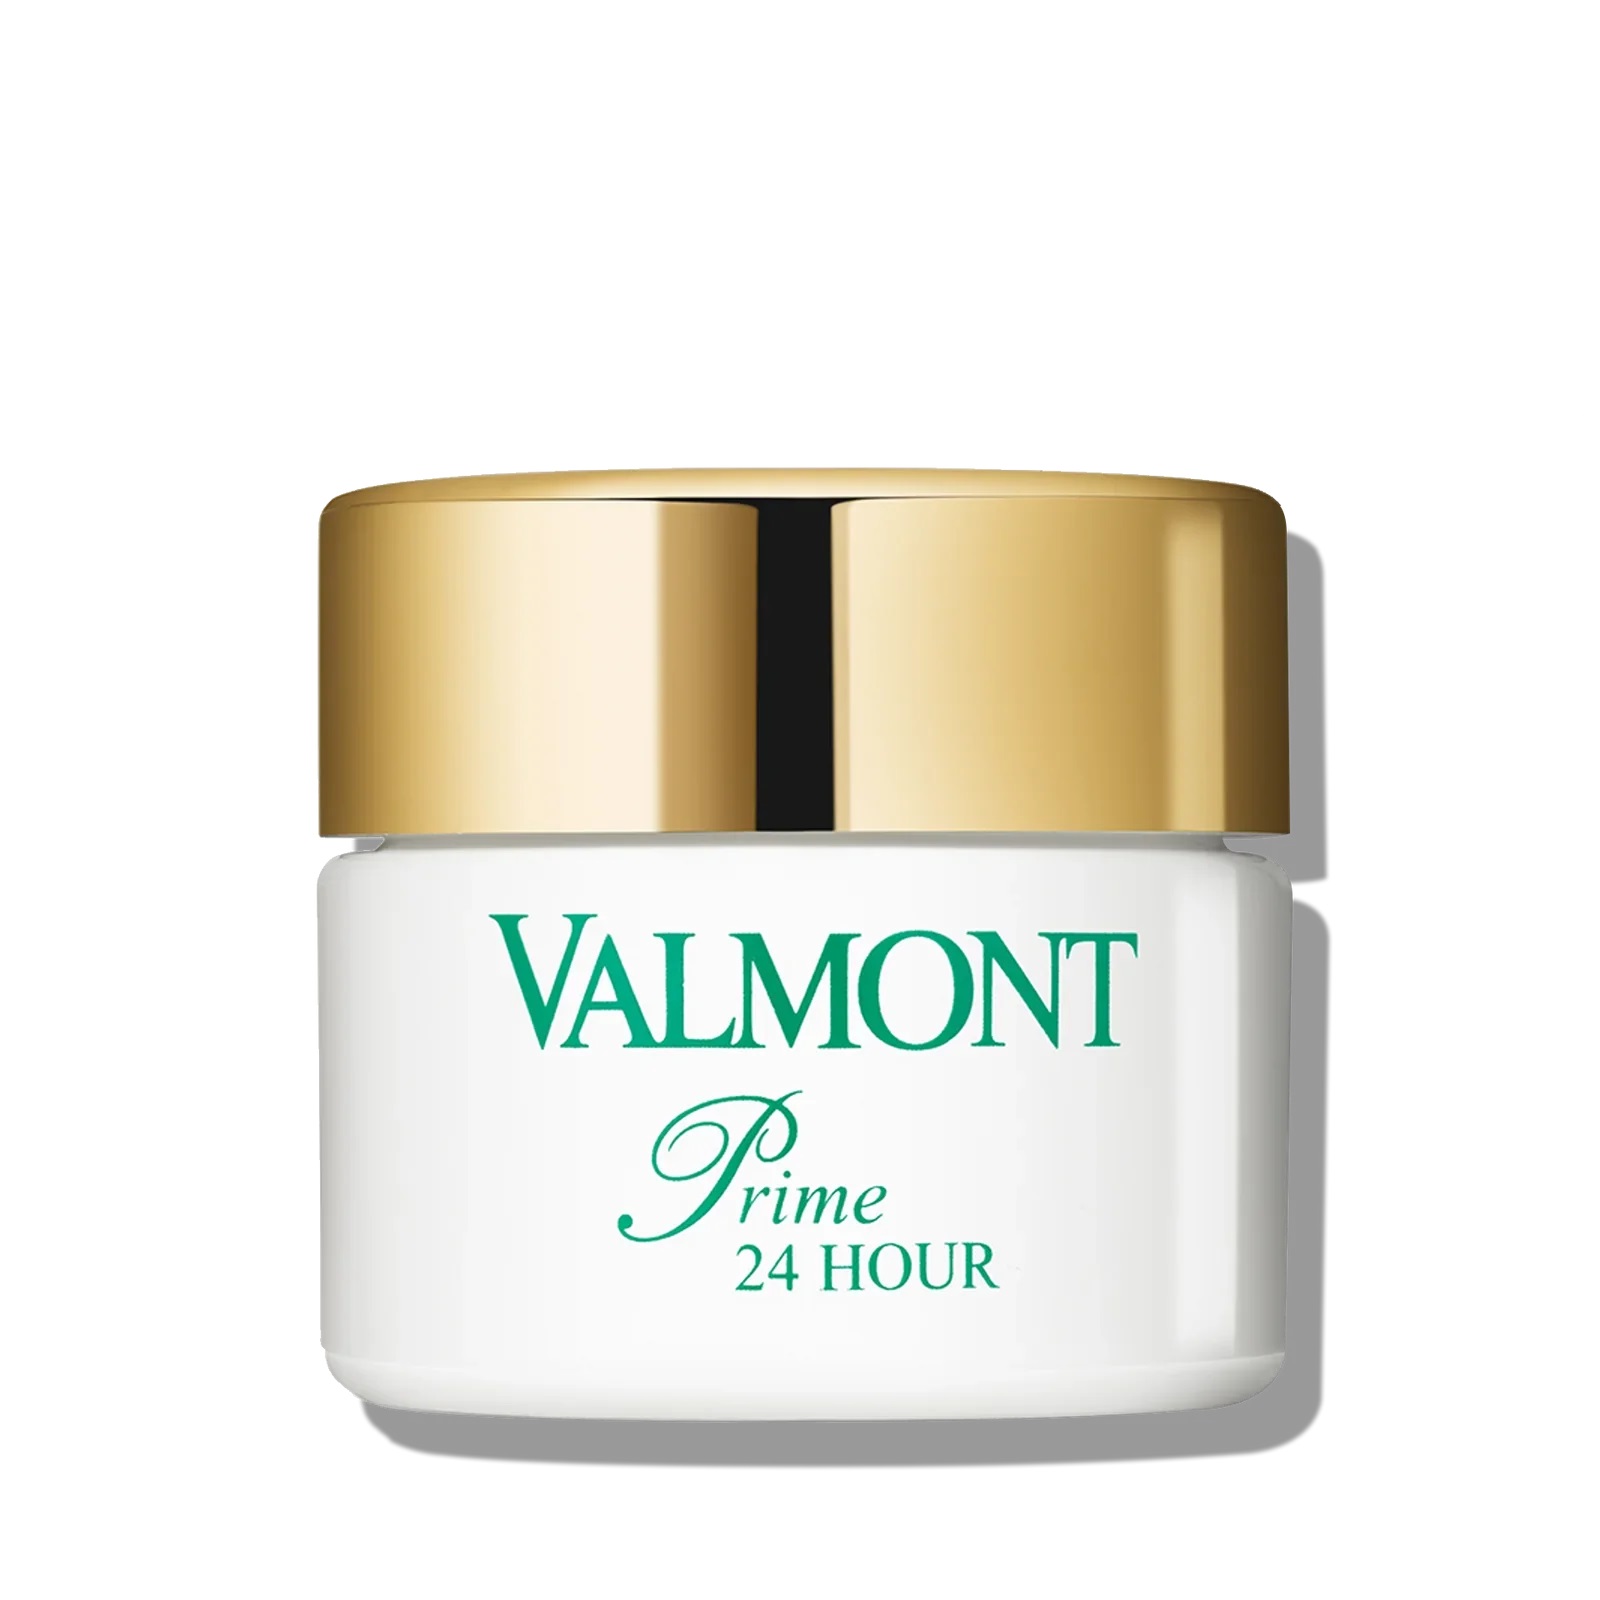 Valmont Energizující a hydratační pleťový krém Energy Prime 24 Hour (Cream) 15 ml